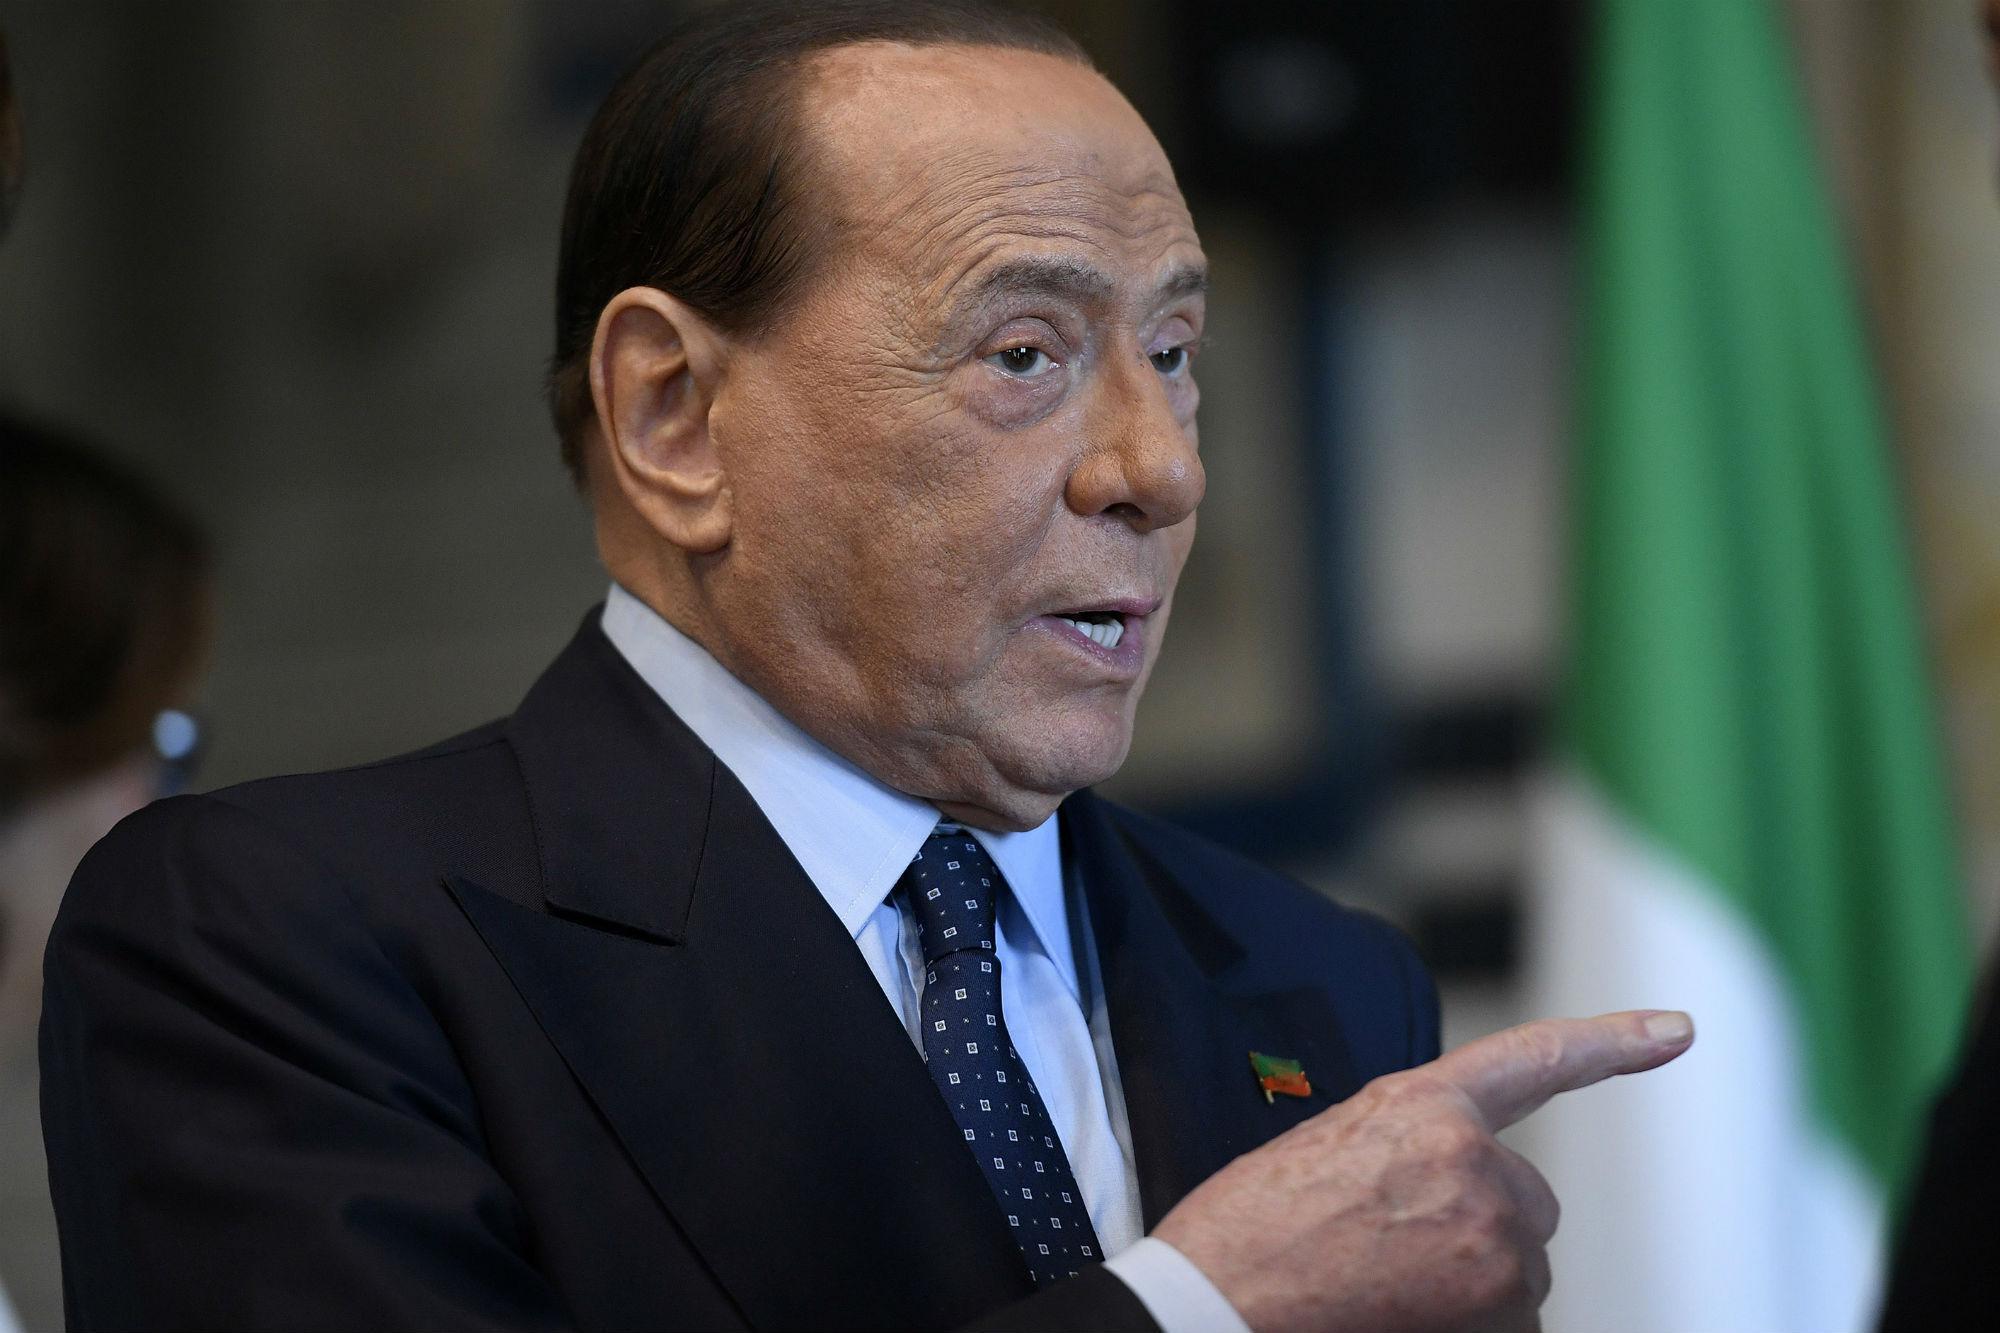 Berlusconi riallaccia i rapporti con Putin: il Tg2 semi-ignora la notizia e la oscura pure con una falsa smentita